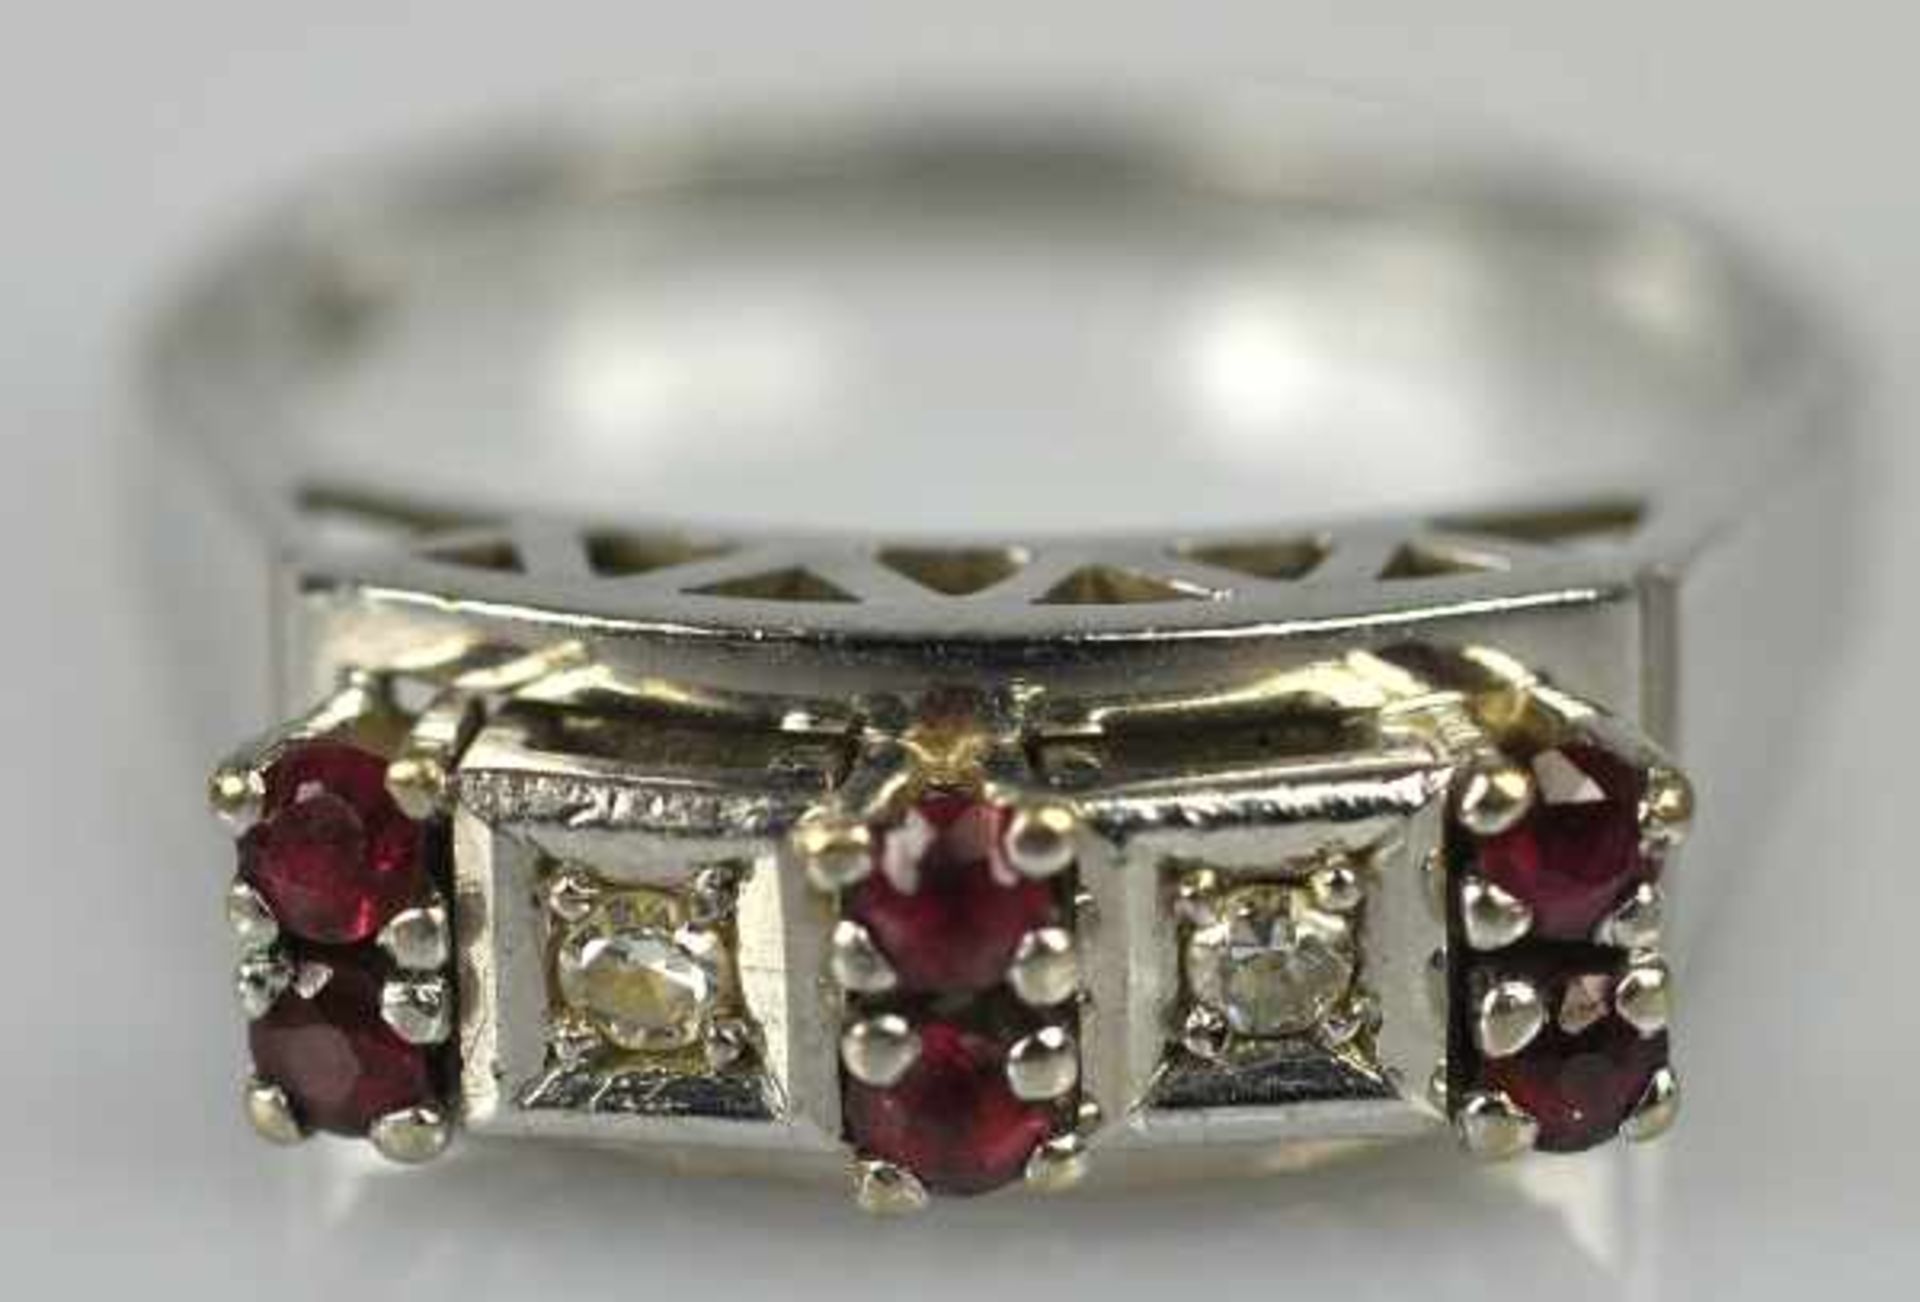 RING besetzt mit 2 Diamanten in viereckiger Fassung und 6 kleinen Rubinen, Fassung mit